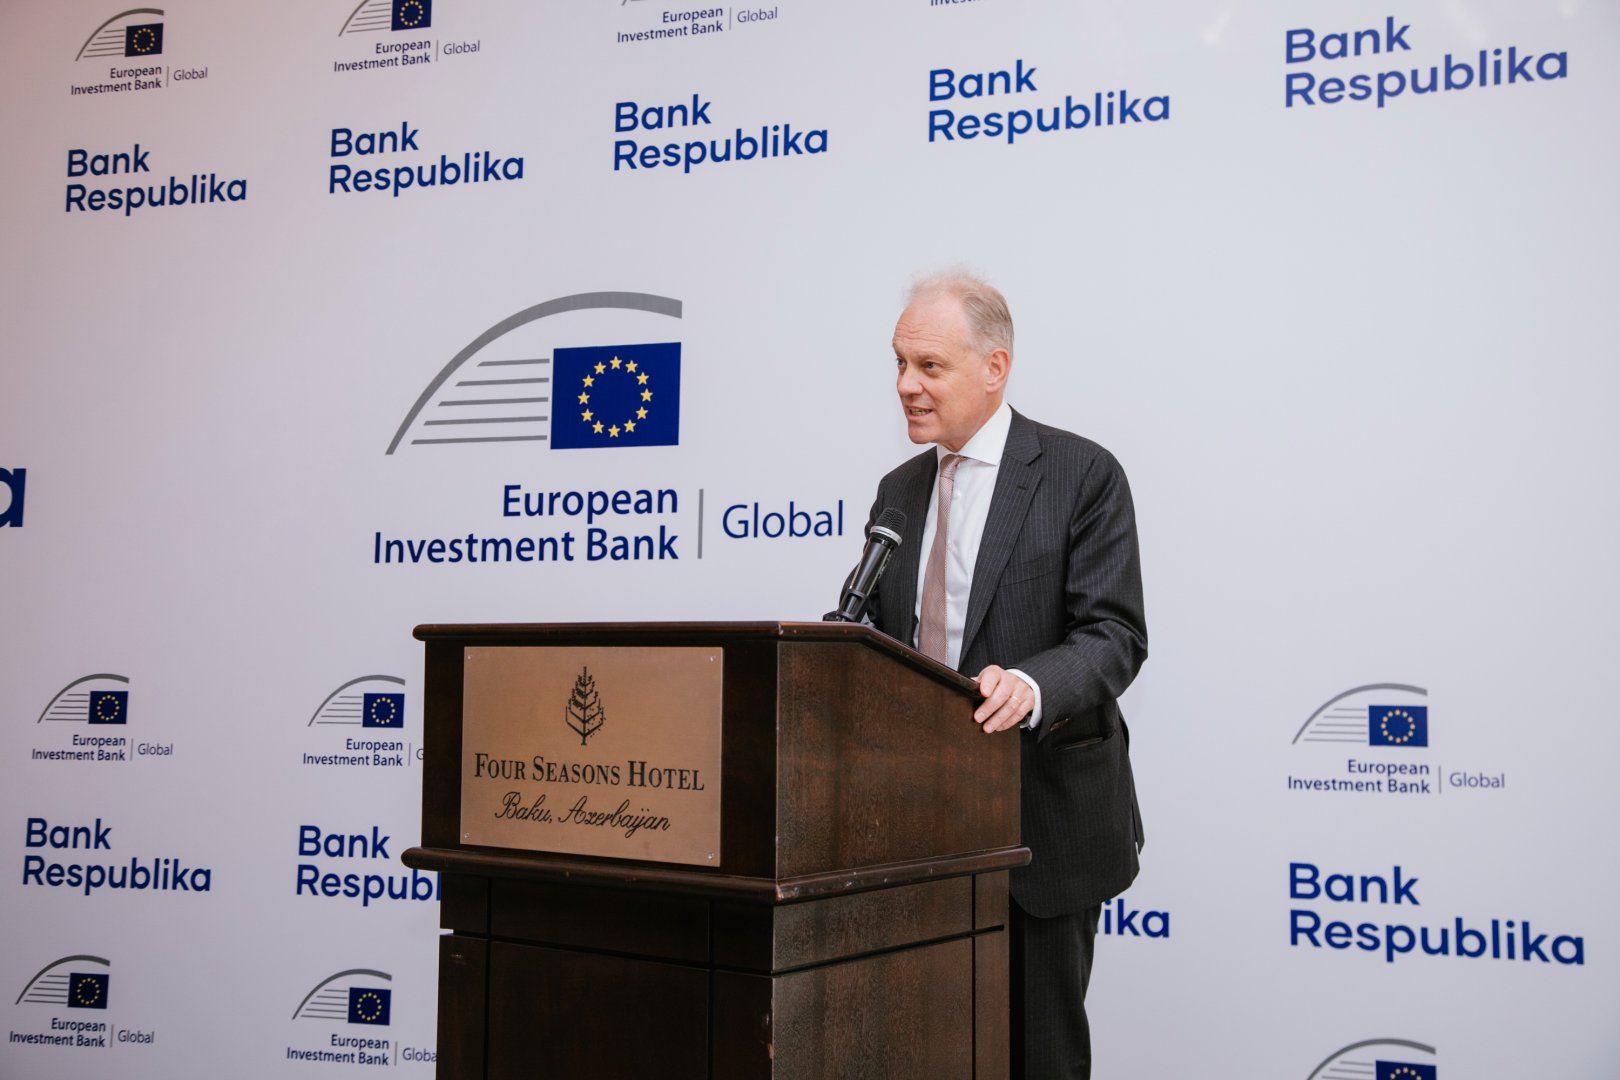 Между Европейским Инвестиционным Банком, крупнейшим финансовым институтом мира и Банк Республика заключено соглашение о сотрудничестве!